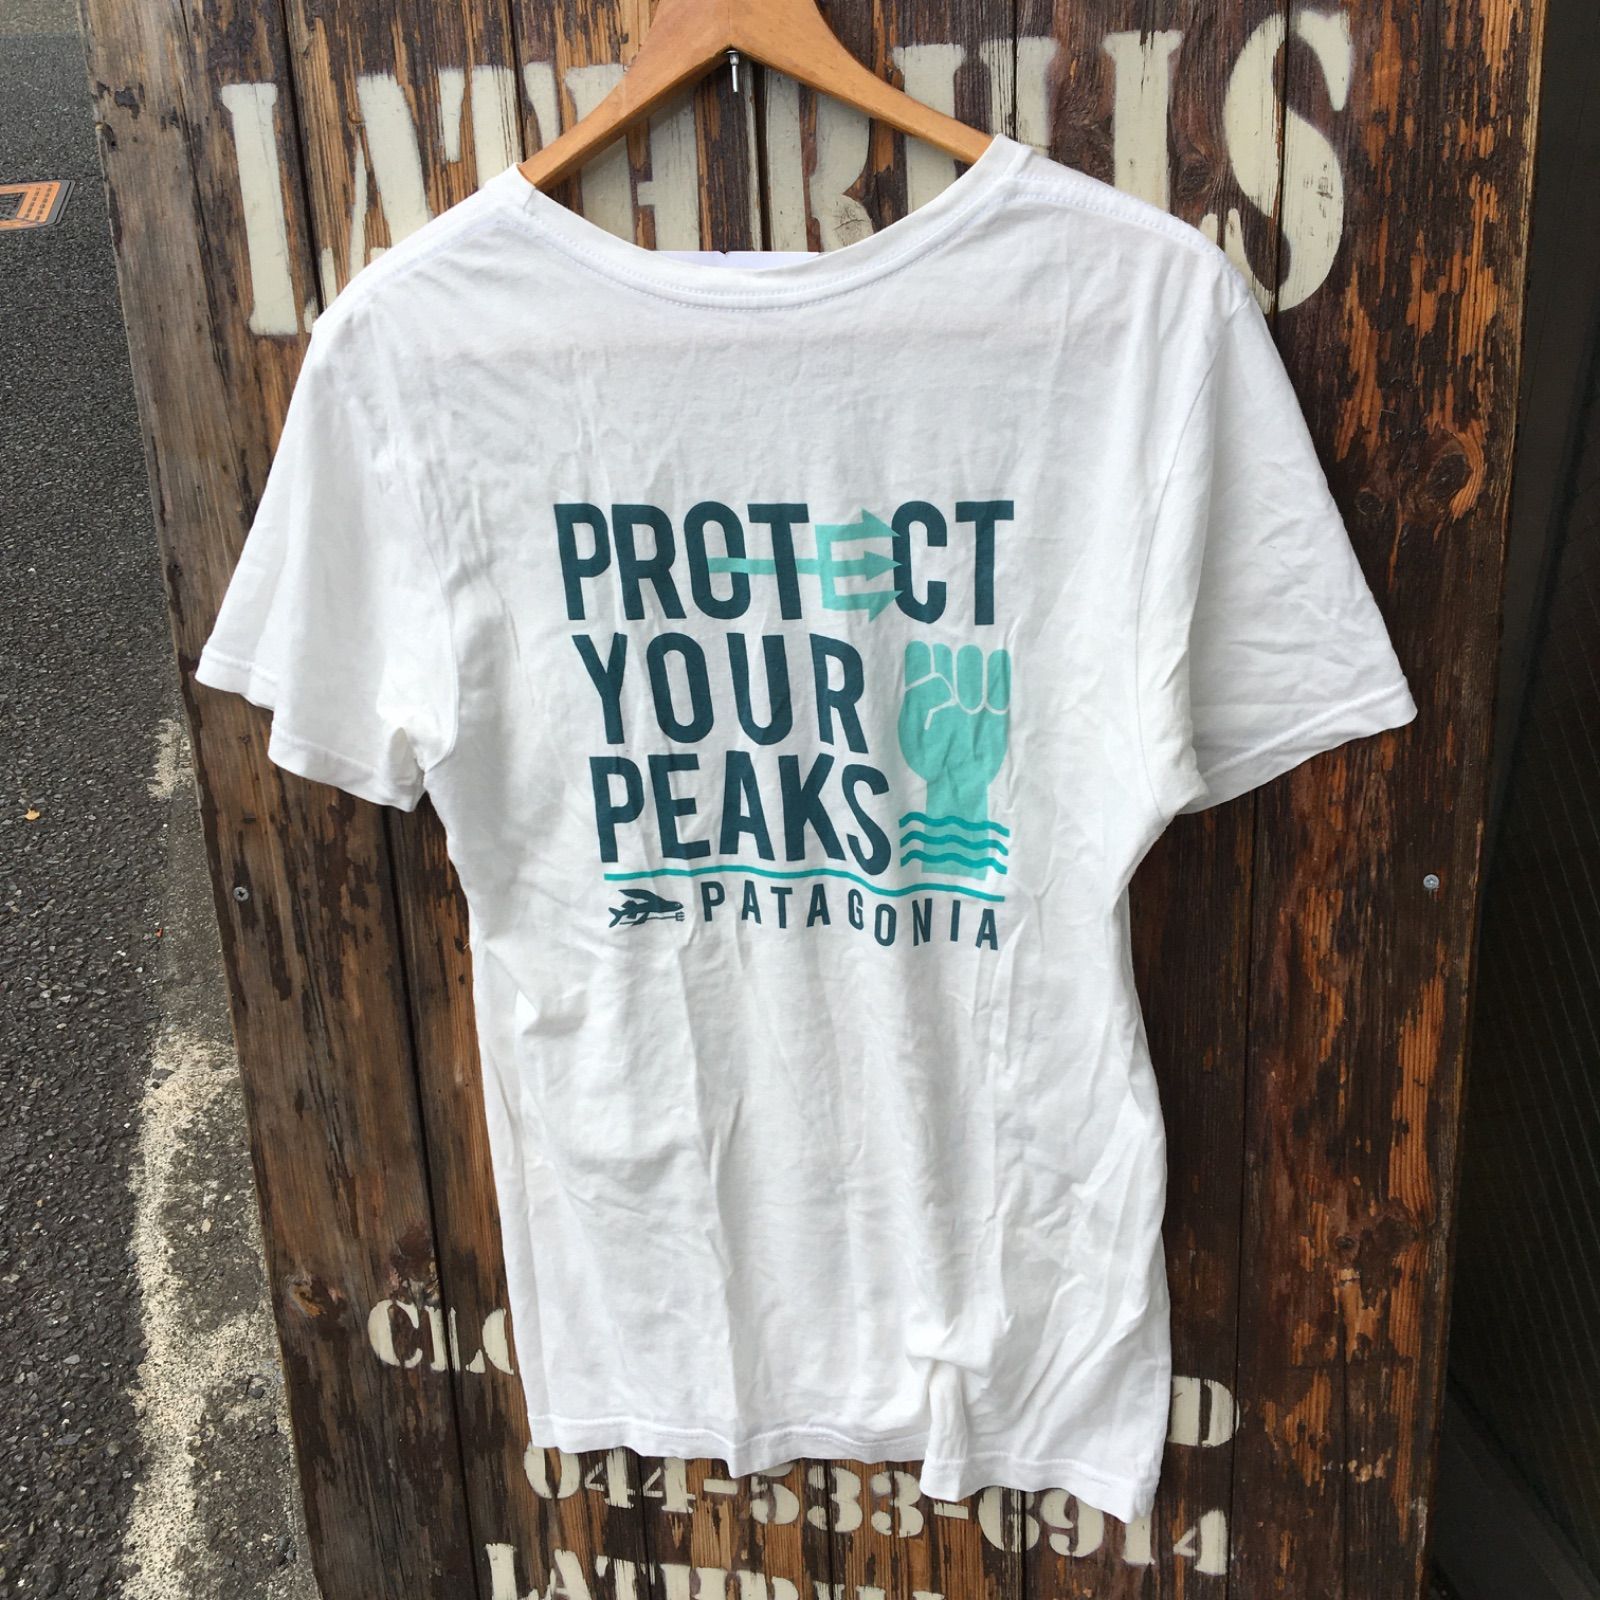 USA製【patagonia】Protect Your Peaks パタゴニア メンズ オーガニックコットン Tシャツ XS - メルカリ